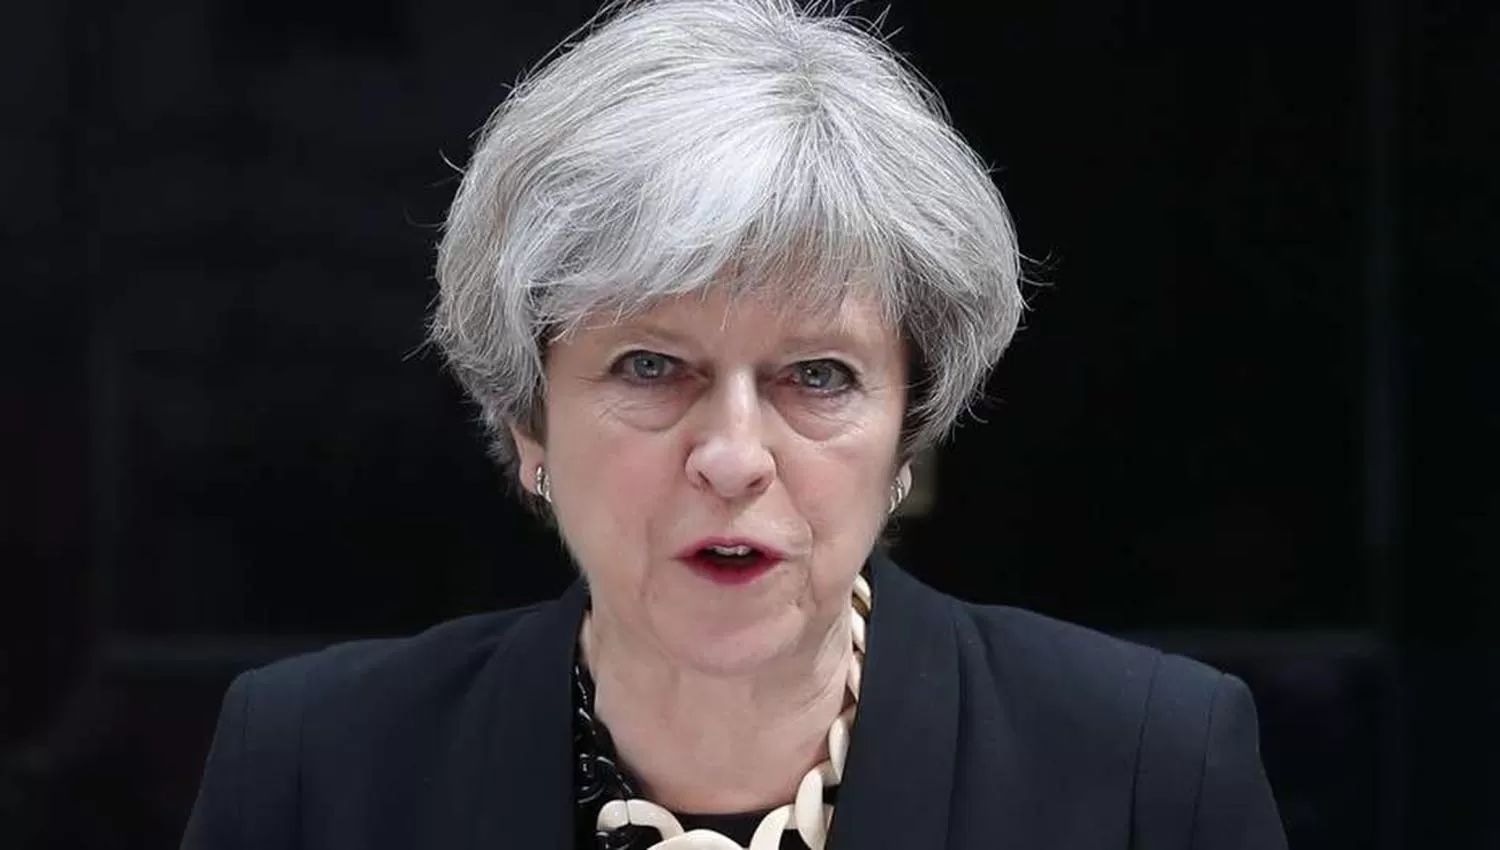 La primera ministra británica siente que fracasó y anunció que renuncia el 7 de junio